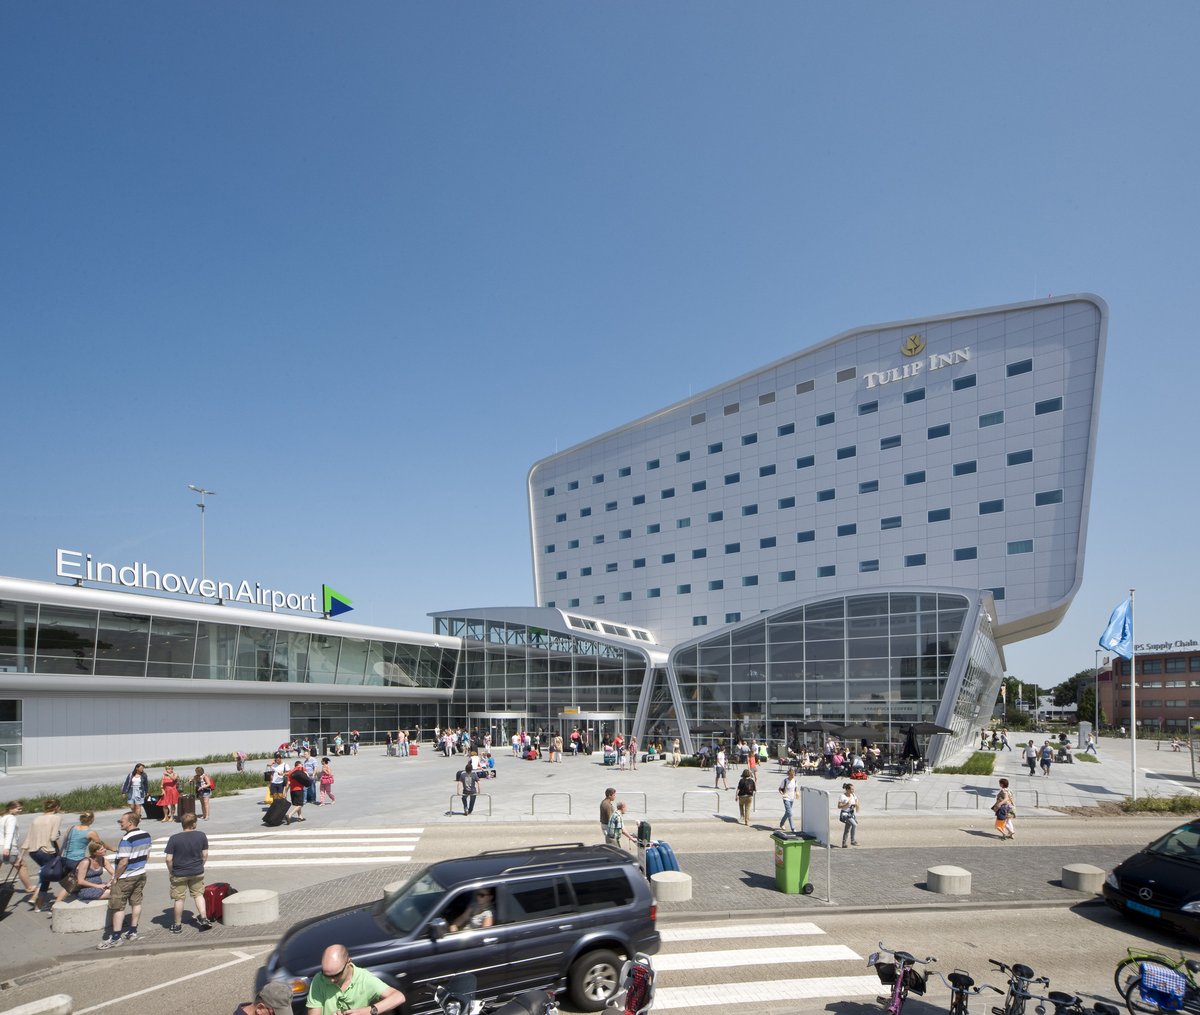 L'aéroport d'Eindhoven accélère la transition verte : L'aéroport accueillera uniquement des avions de nouvelle génération à partir de 2030, entre autres mesures fortes. #EindhovenAirport #sustainableaviation ♻️